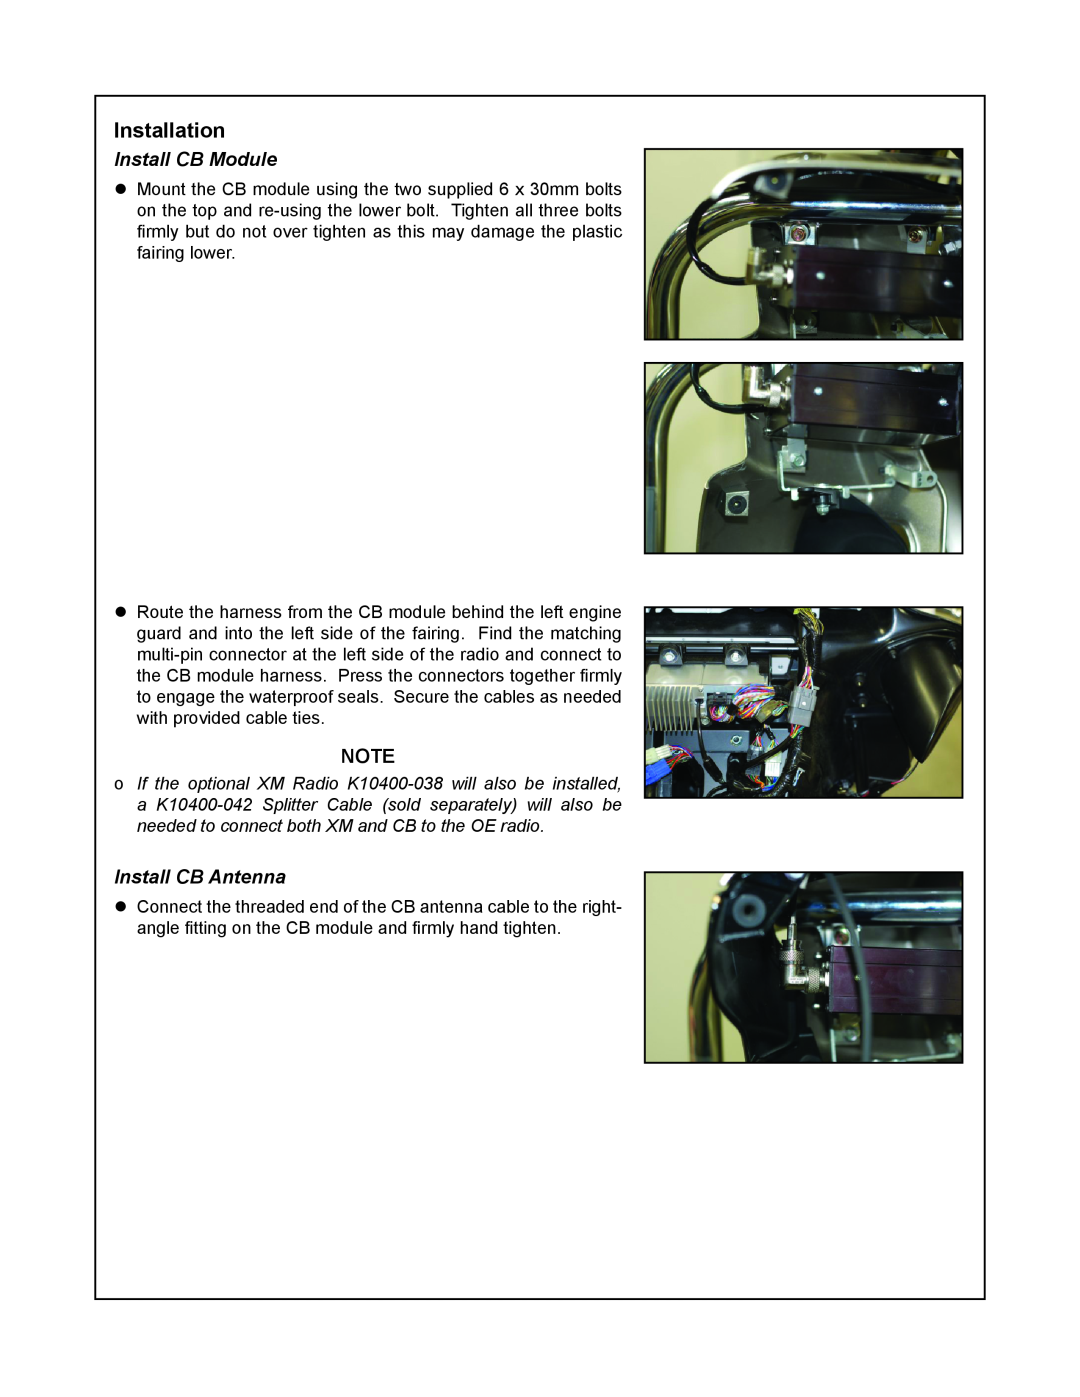 Kawasaki VULCAN 1700 VOYAGER installation instructions Installation, Install CB Module, Install CB Antenna 